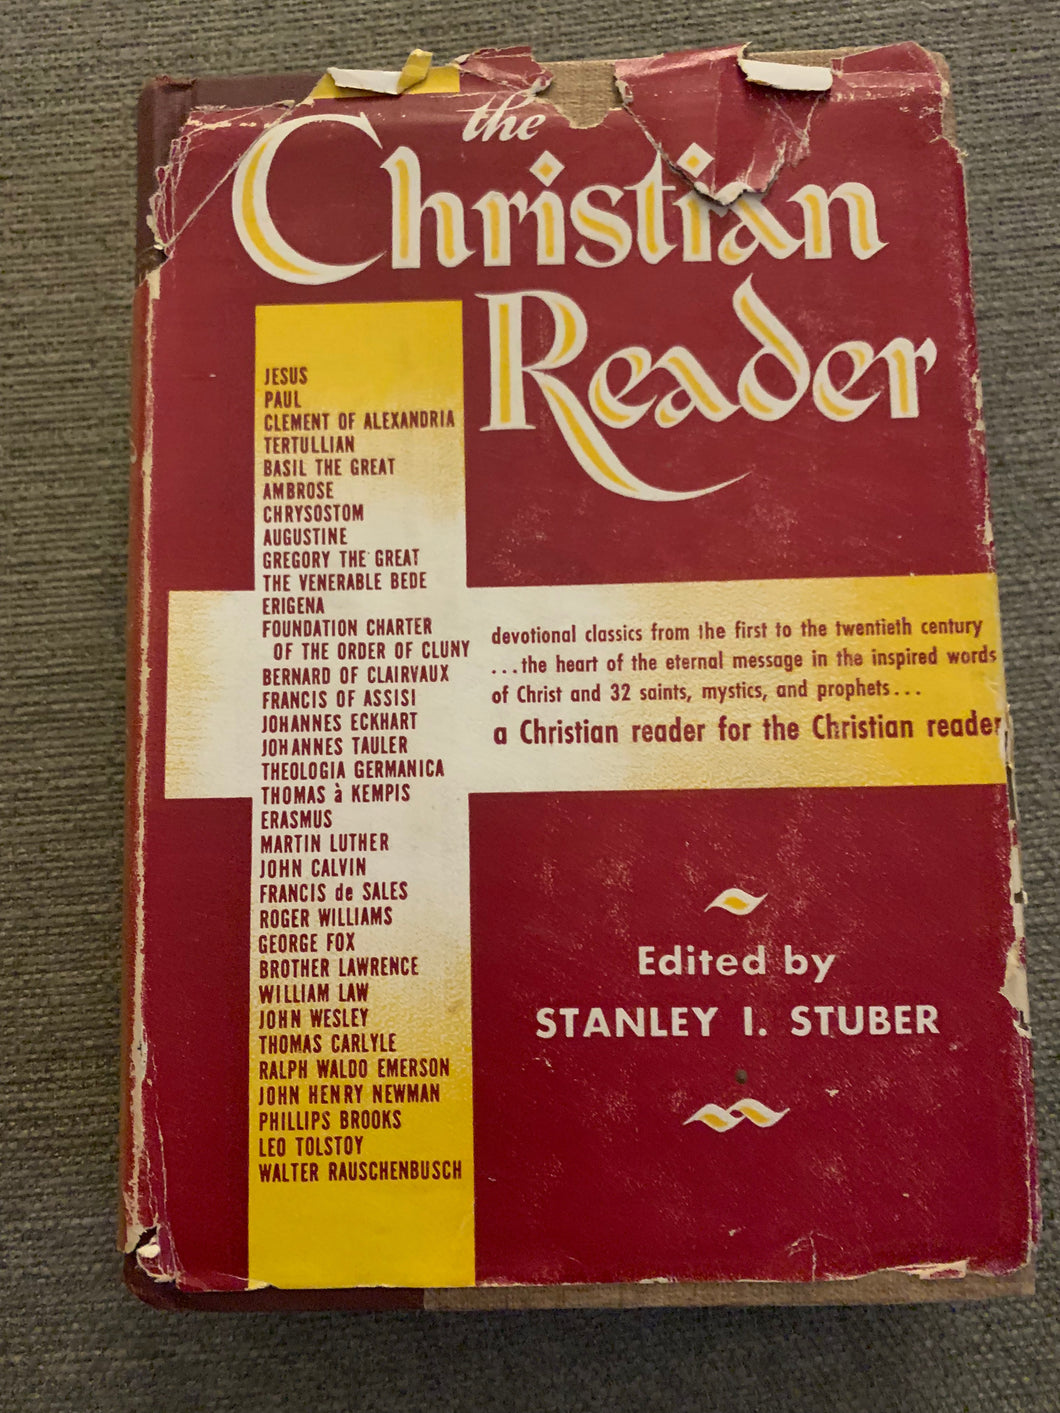 The Christian Reader by Stanley I. Stuber